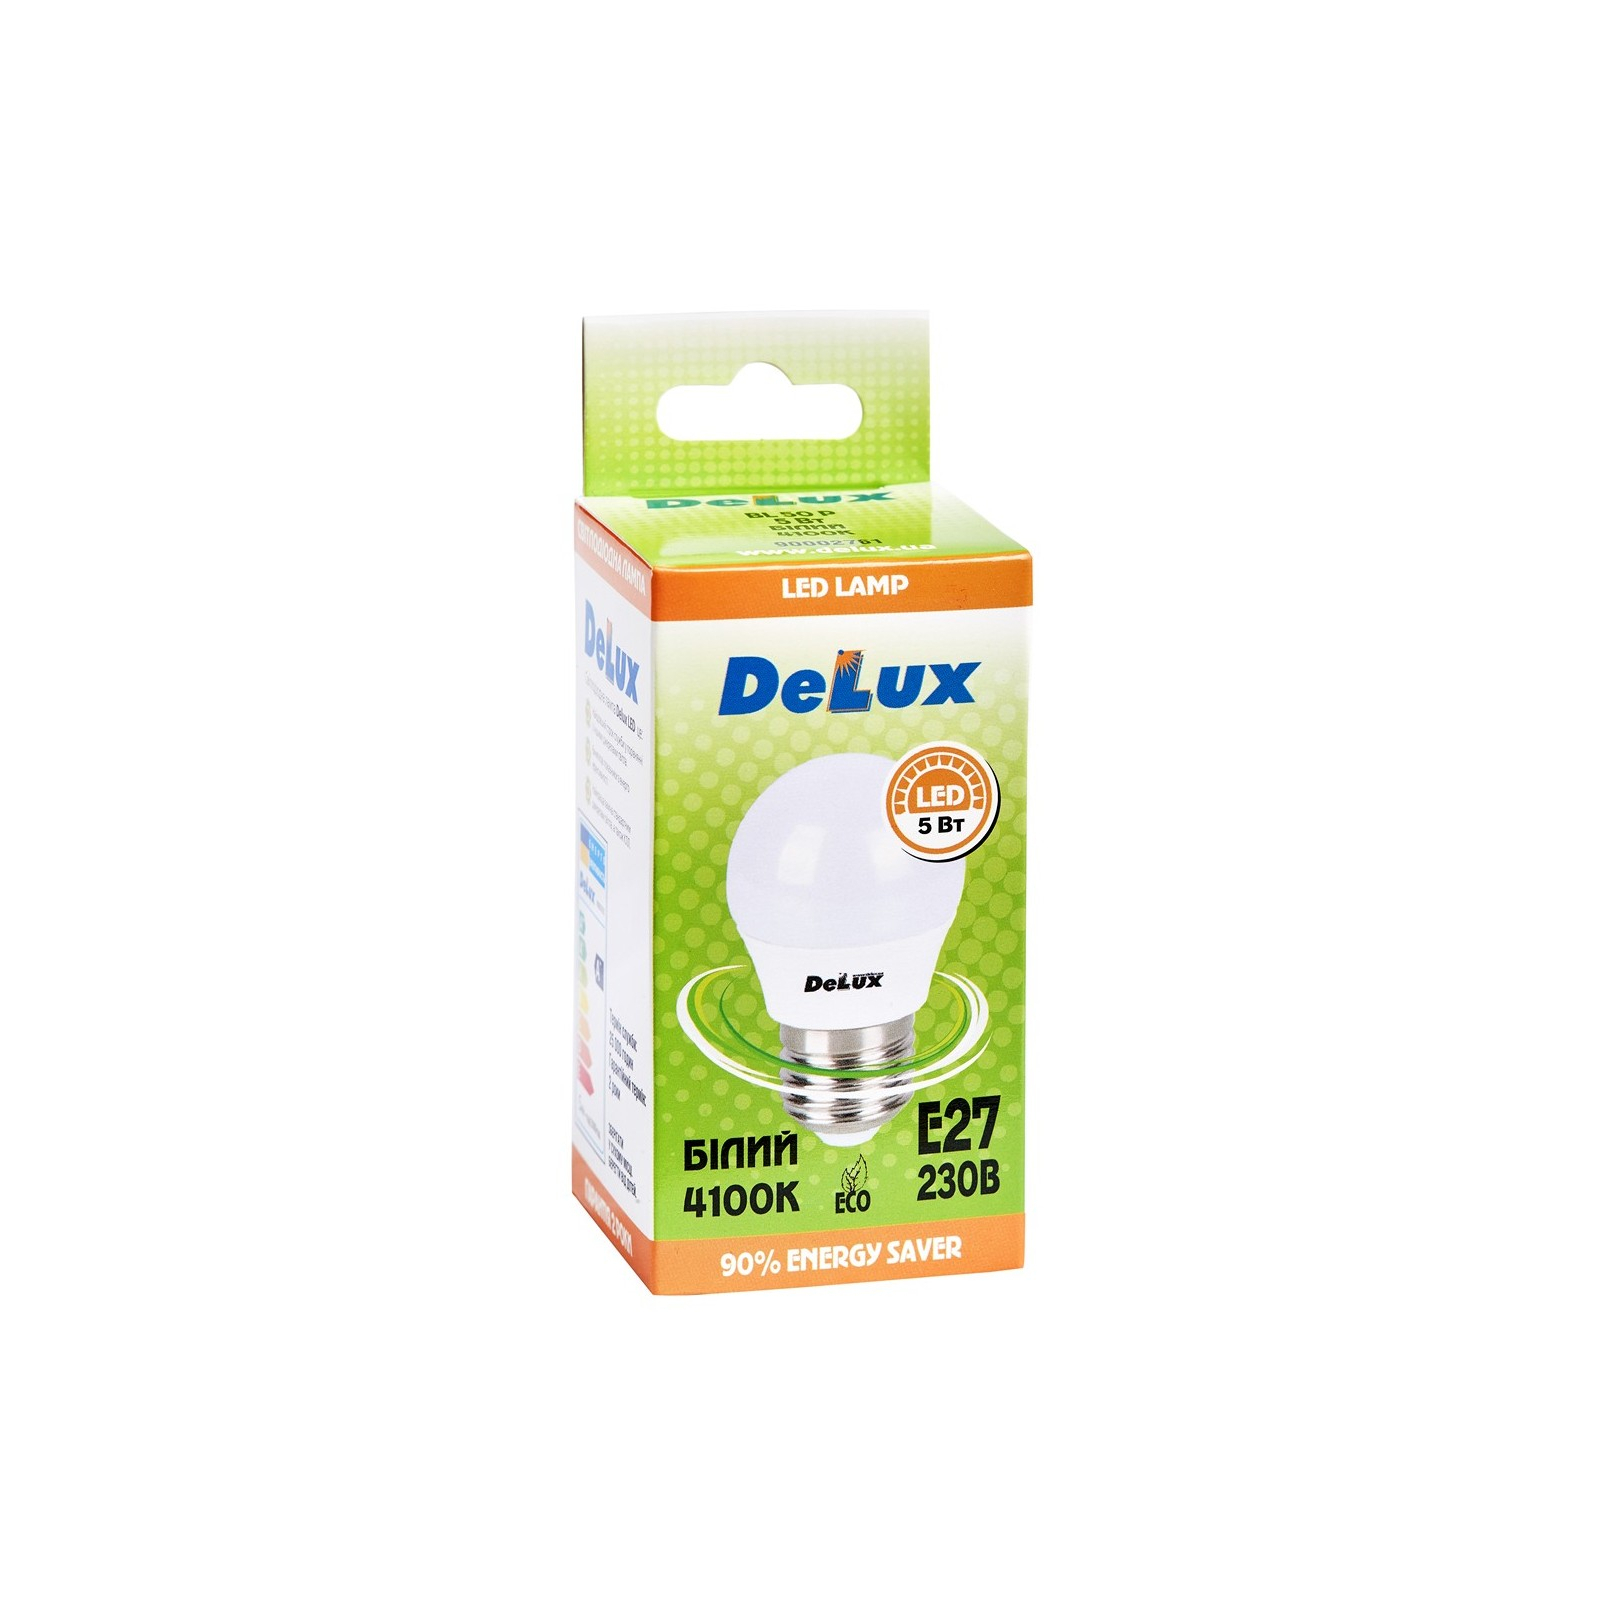 Лампочка Delux BL50P 5 Вт 4100K 220В E27 (90020559) зображення 2